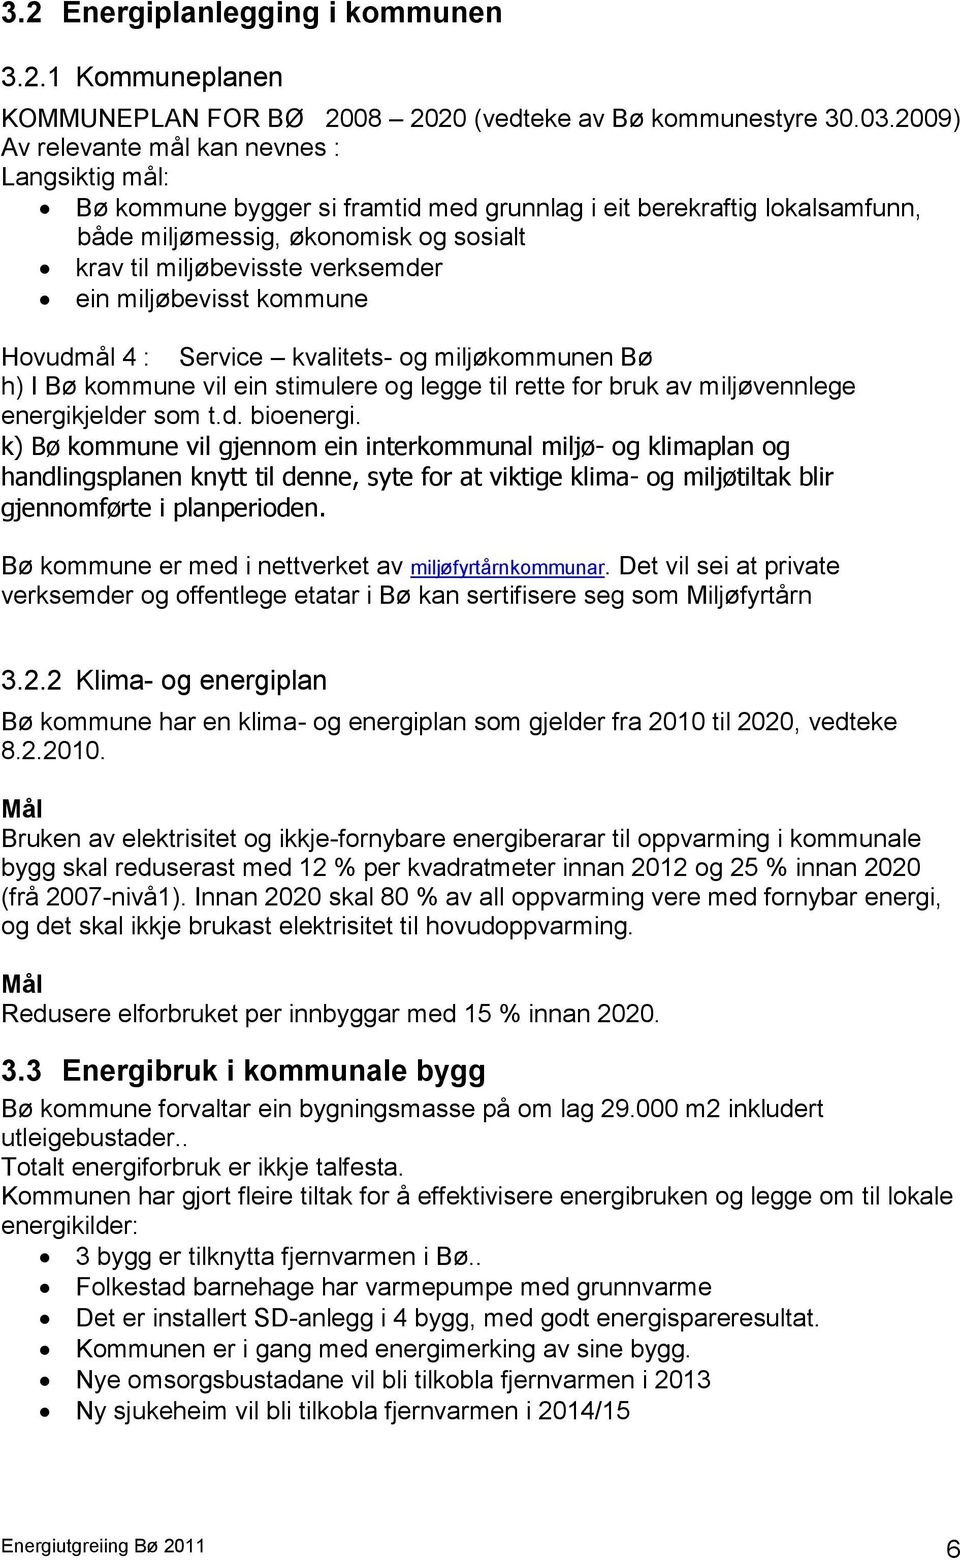 ein miljøbevisst kommune Hovudmål 4 : Service kvalitets- og miljøkommunen Bø h) I Bø kommune vil ein stimulere og legge til rette for bruk av miljøvennlege energikjelder som t.d. bioenergi.